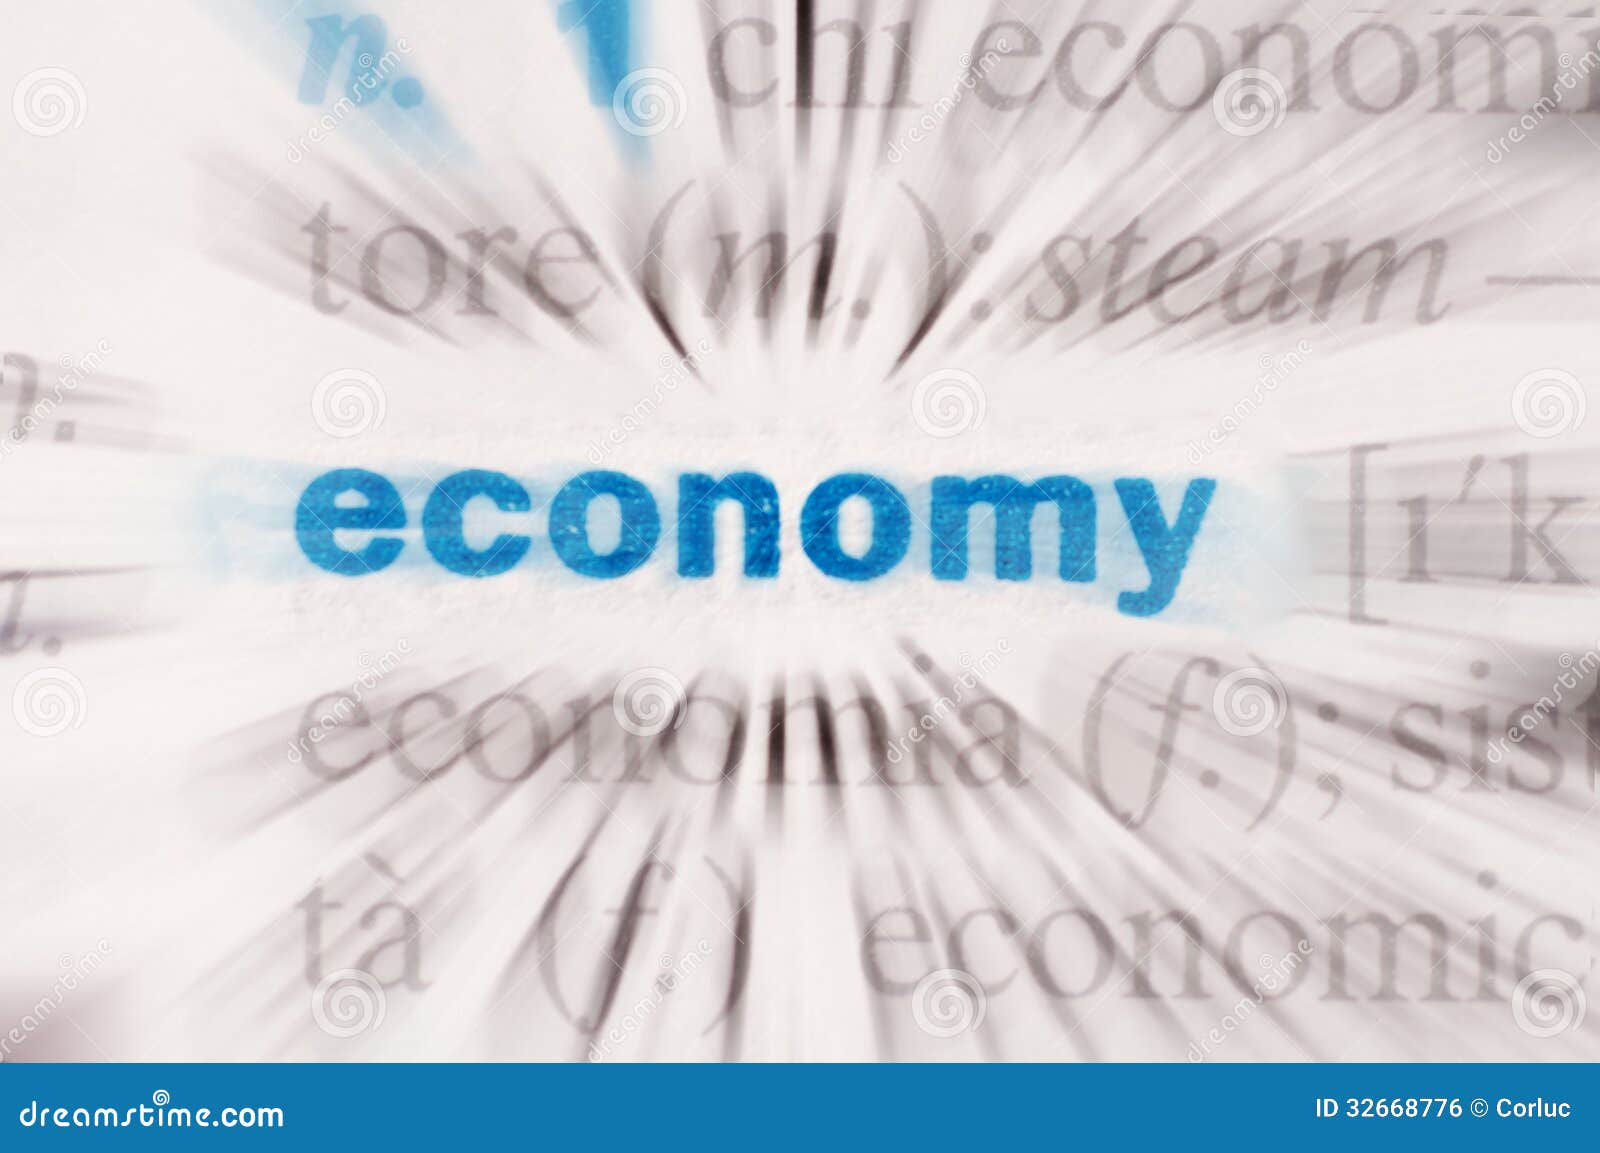 economy word